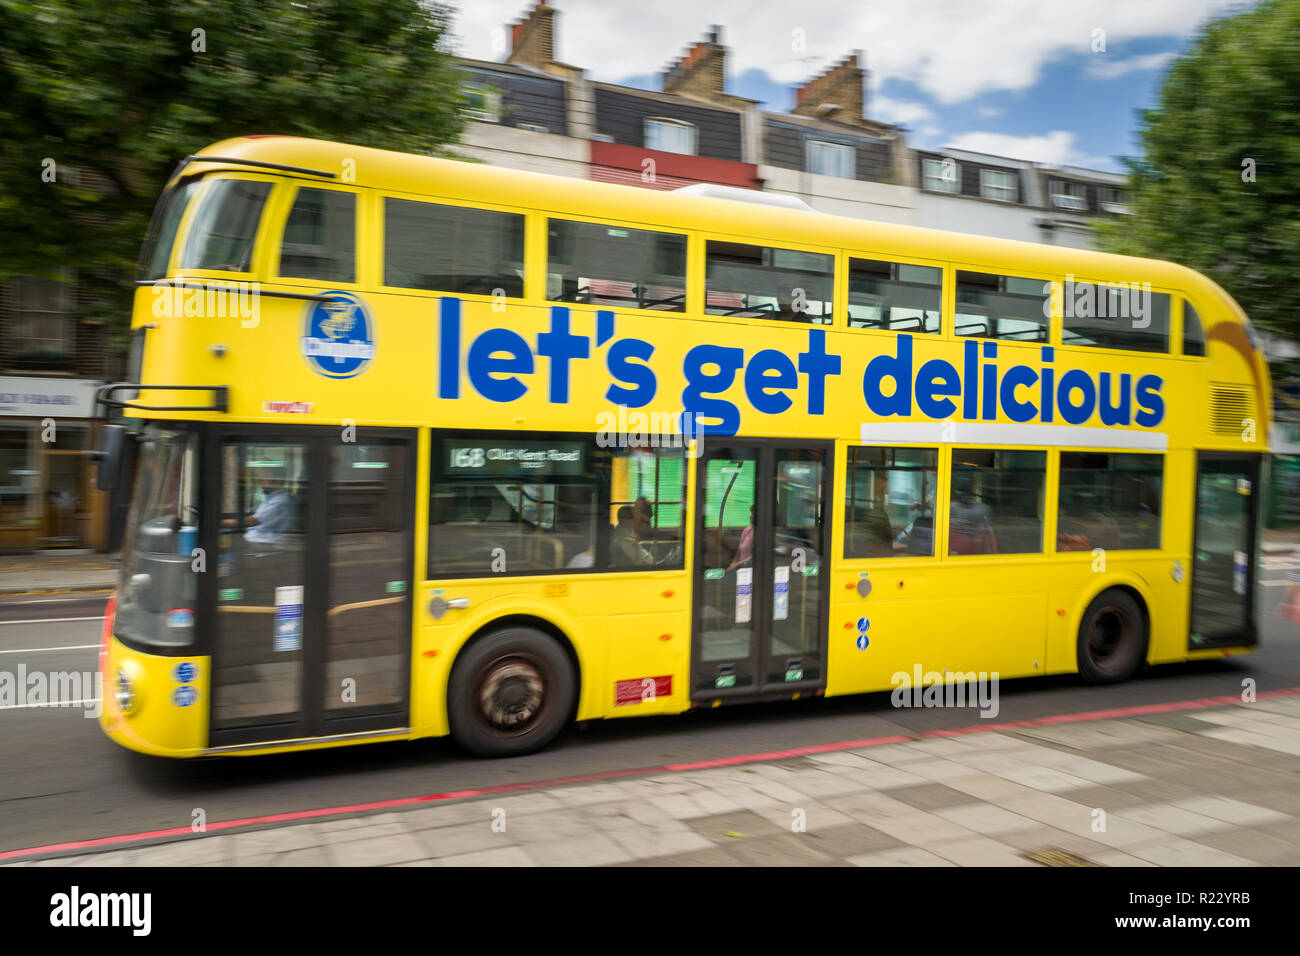 Immagine panoramica di un giallo double decker bus con banane Chiquita Mettiamoci Delizioso su di esso come si percorre una strada a Londra, Regno Unito Foto Stock